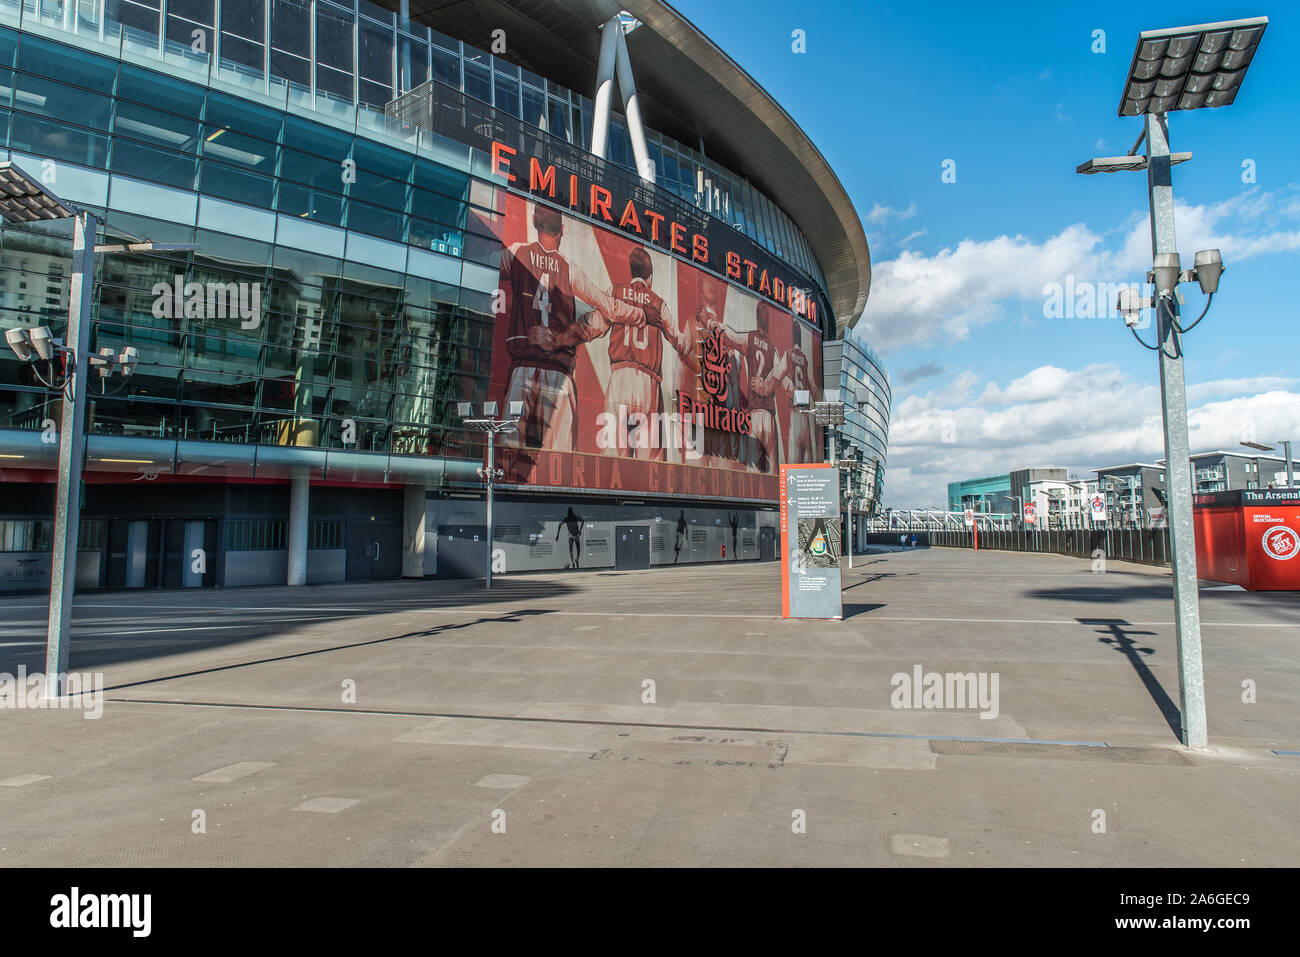 Immagini di arsenali Emirates Stadium nel nord di Londra Foto Stock